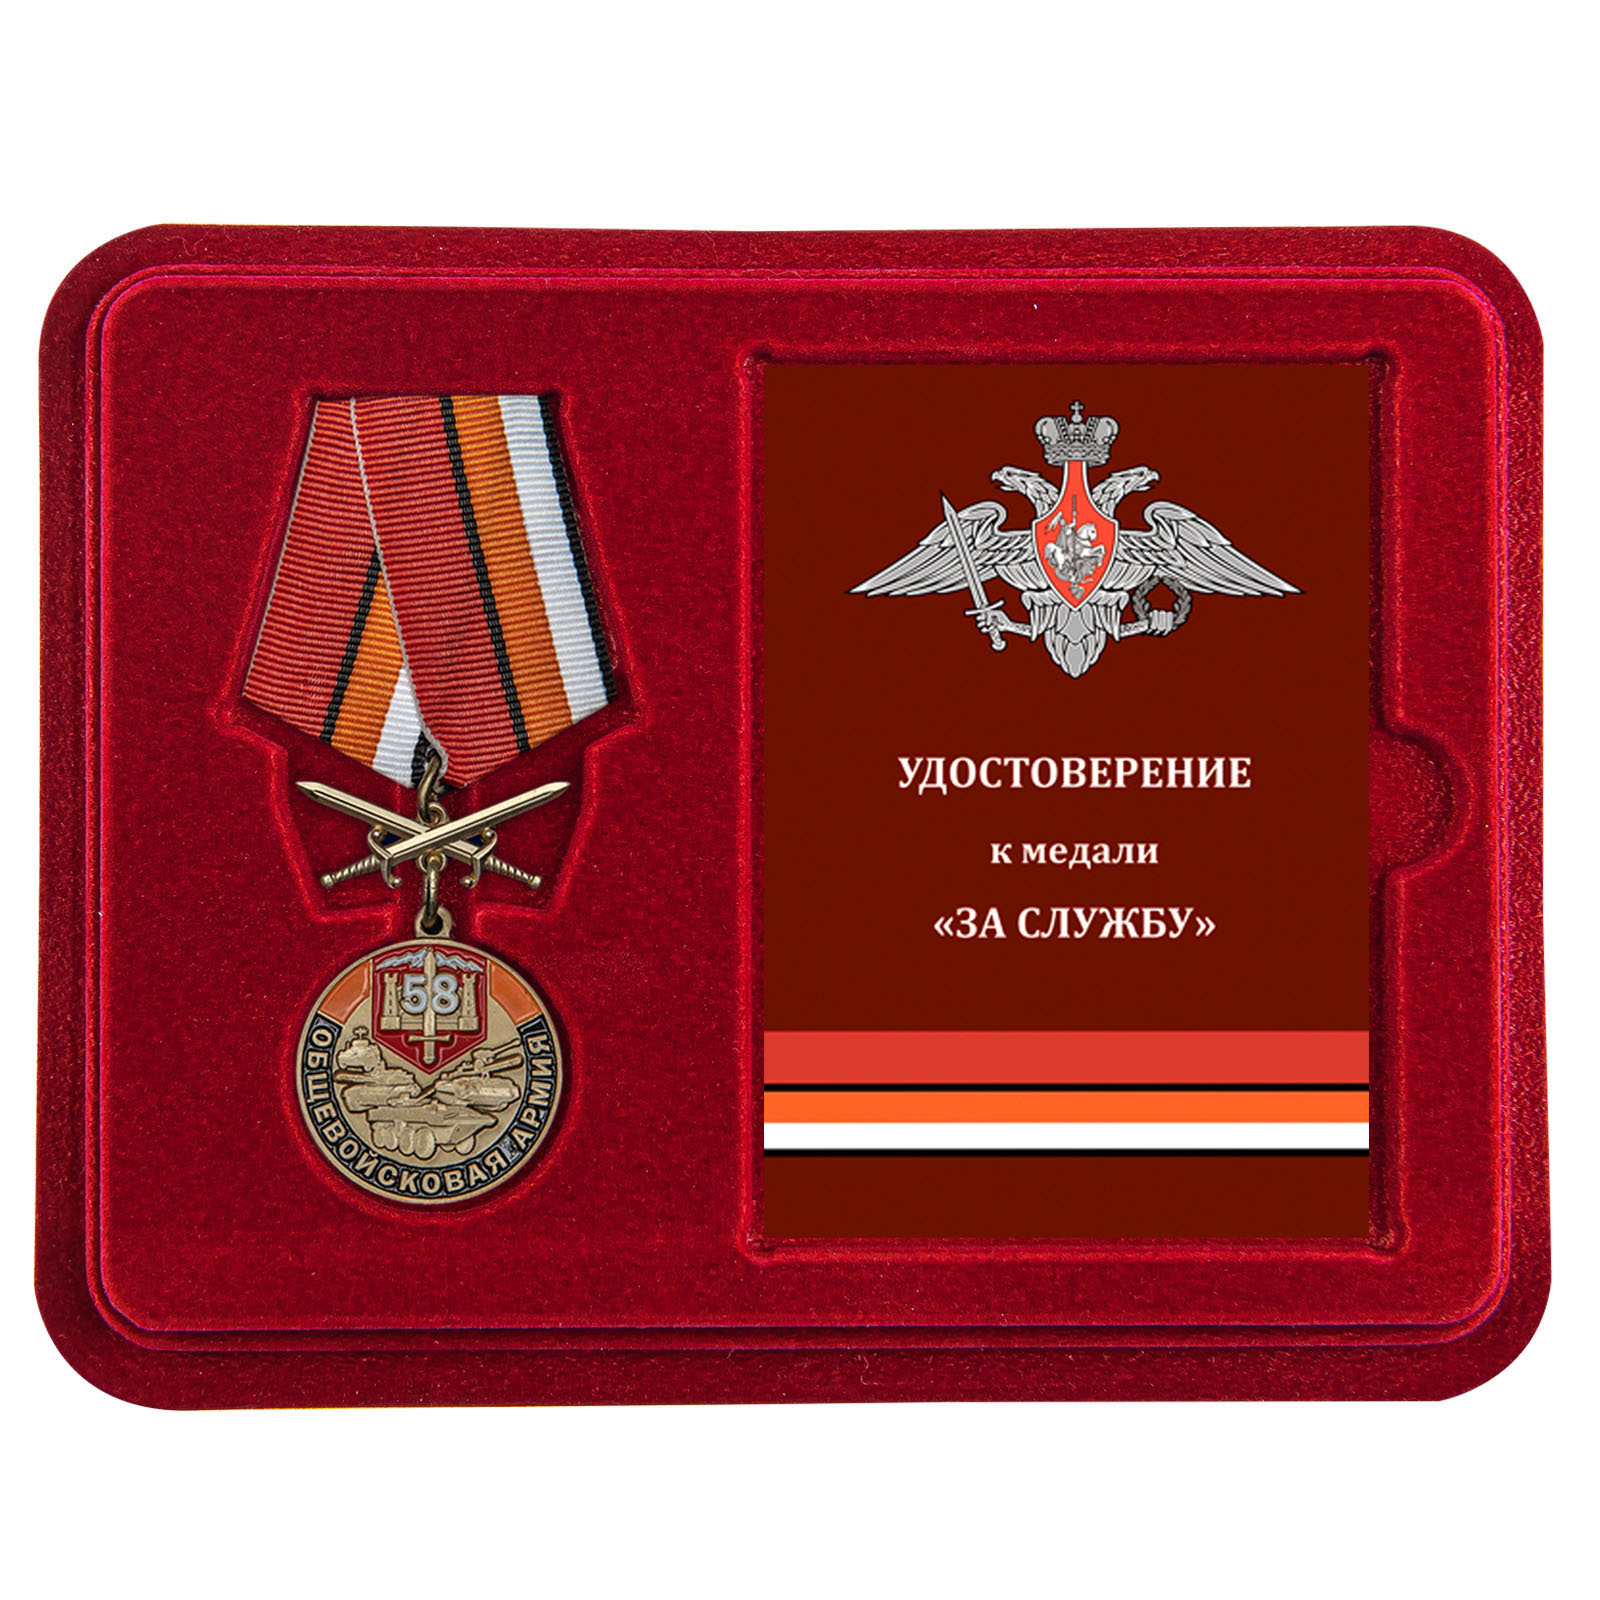 Купить медаль 58 Общевойсковая армия За службу по лучшей цене